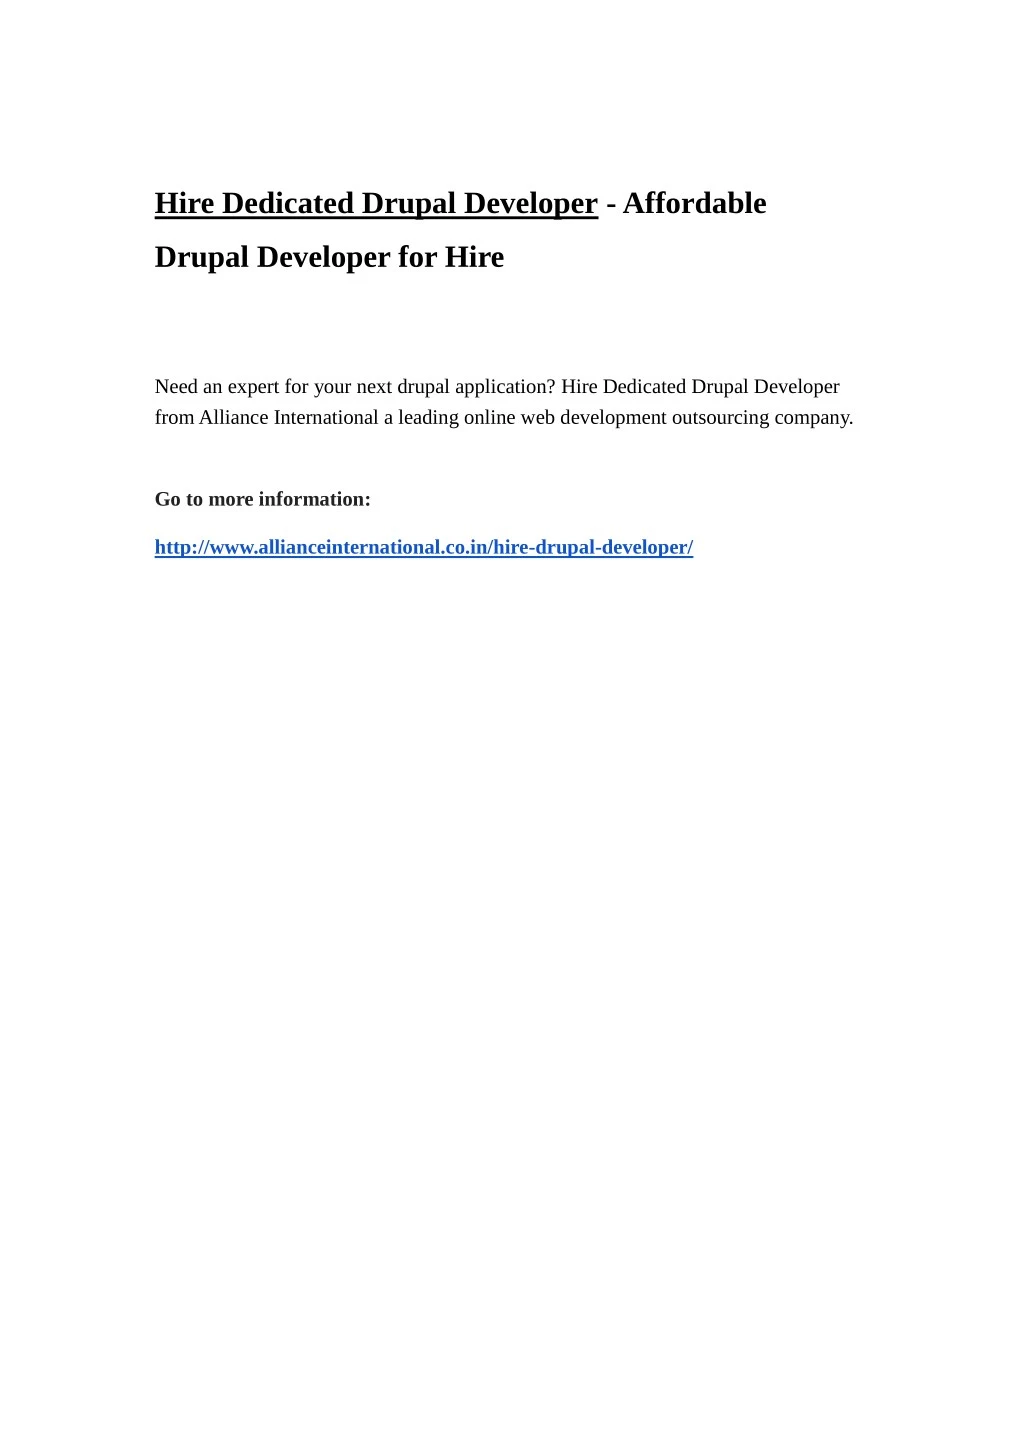 hire dedicated drupal developer affordable